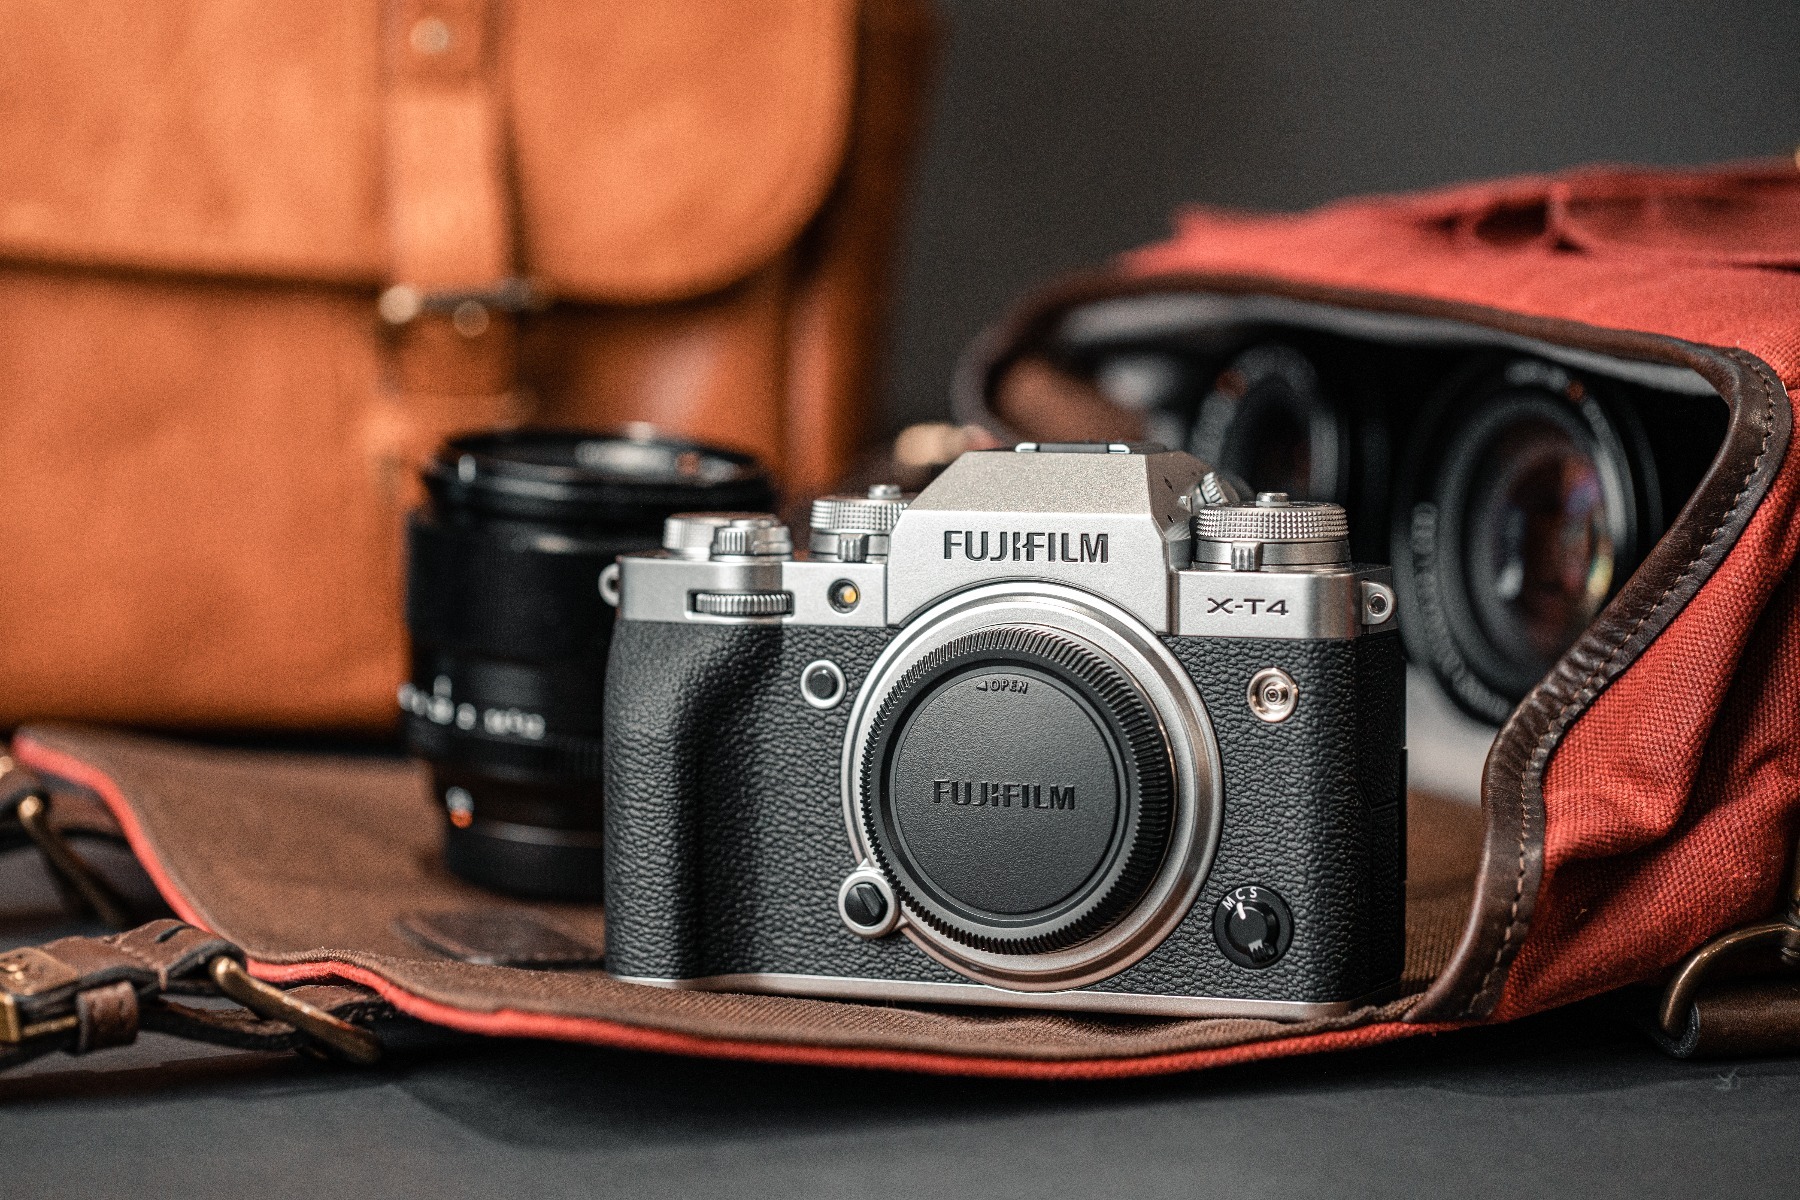 NÂNG TẦM NHIẾP ẢNH - TẠO ĐÀ BƯỚC PHÁ: Khuyến mãi máy ảnh và ống kính Fujifilm trong tháng 2 tại WinWinStore